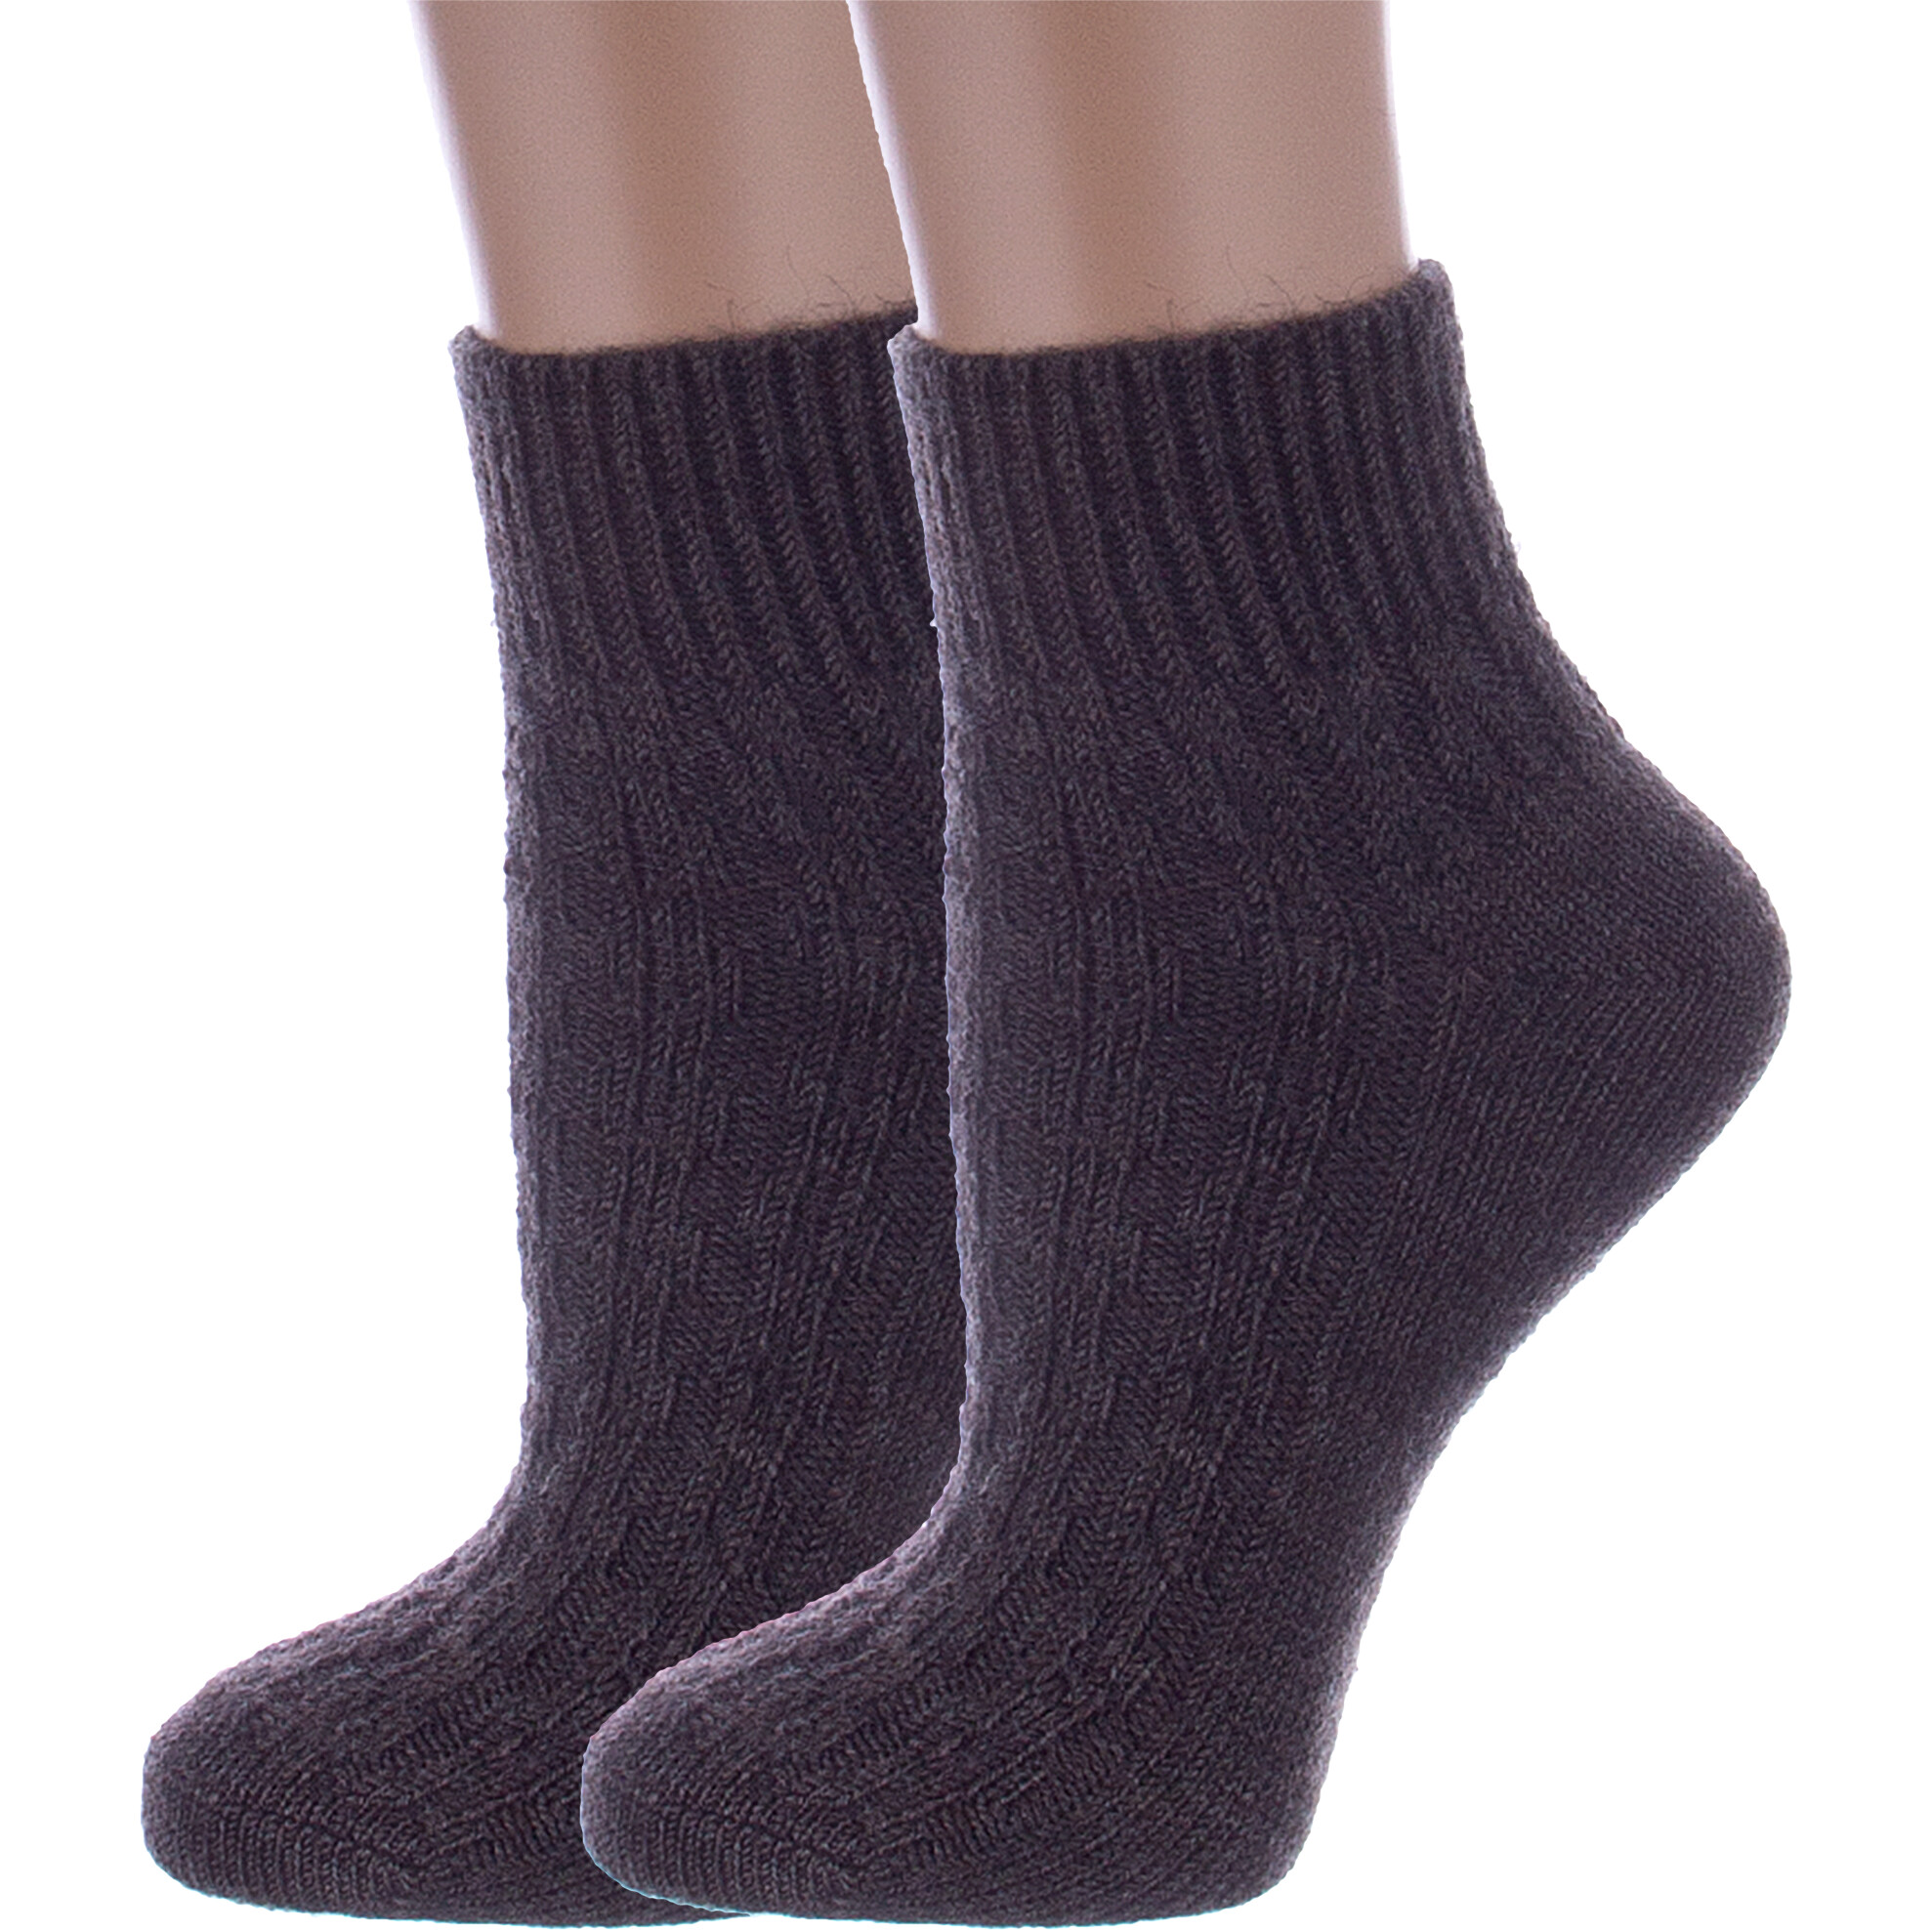 Комплект носков женских Rusocks 2-Ж-23801 коричневых 25, 2 пары